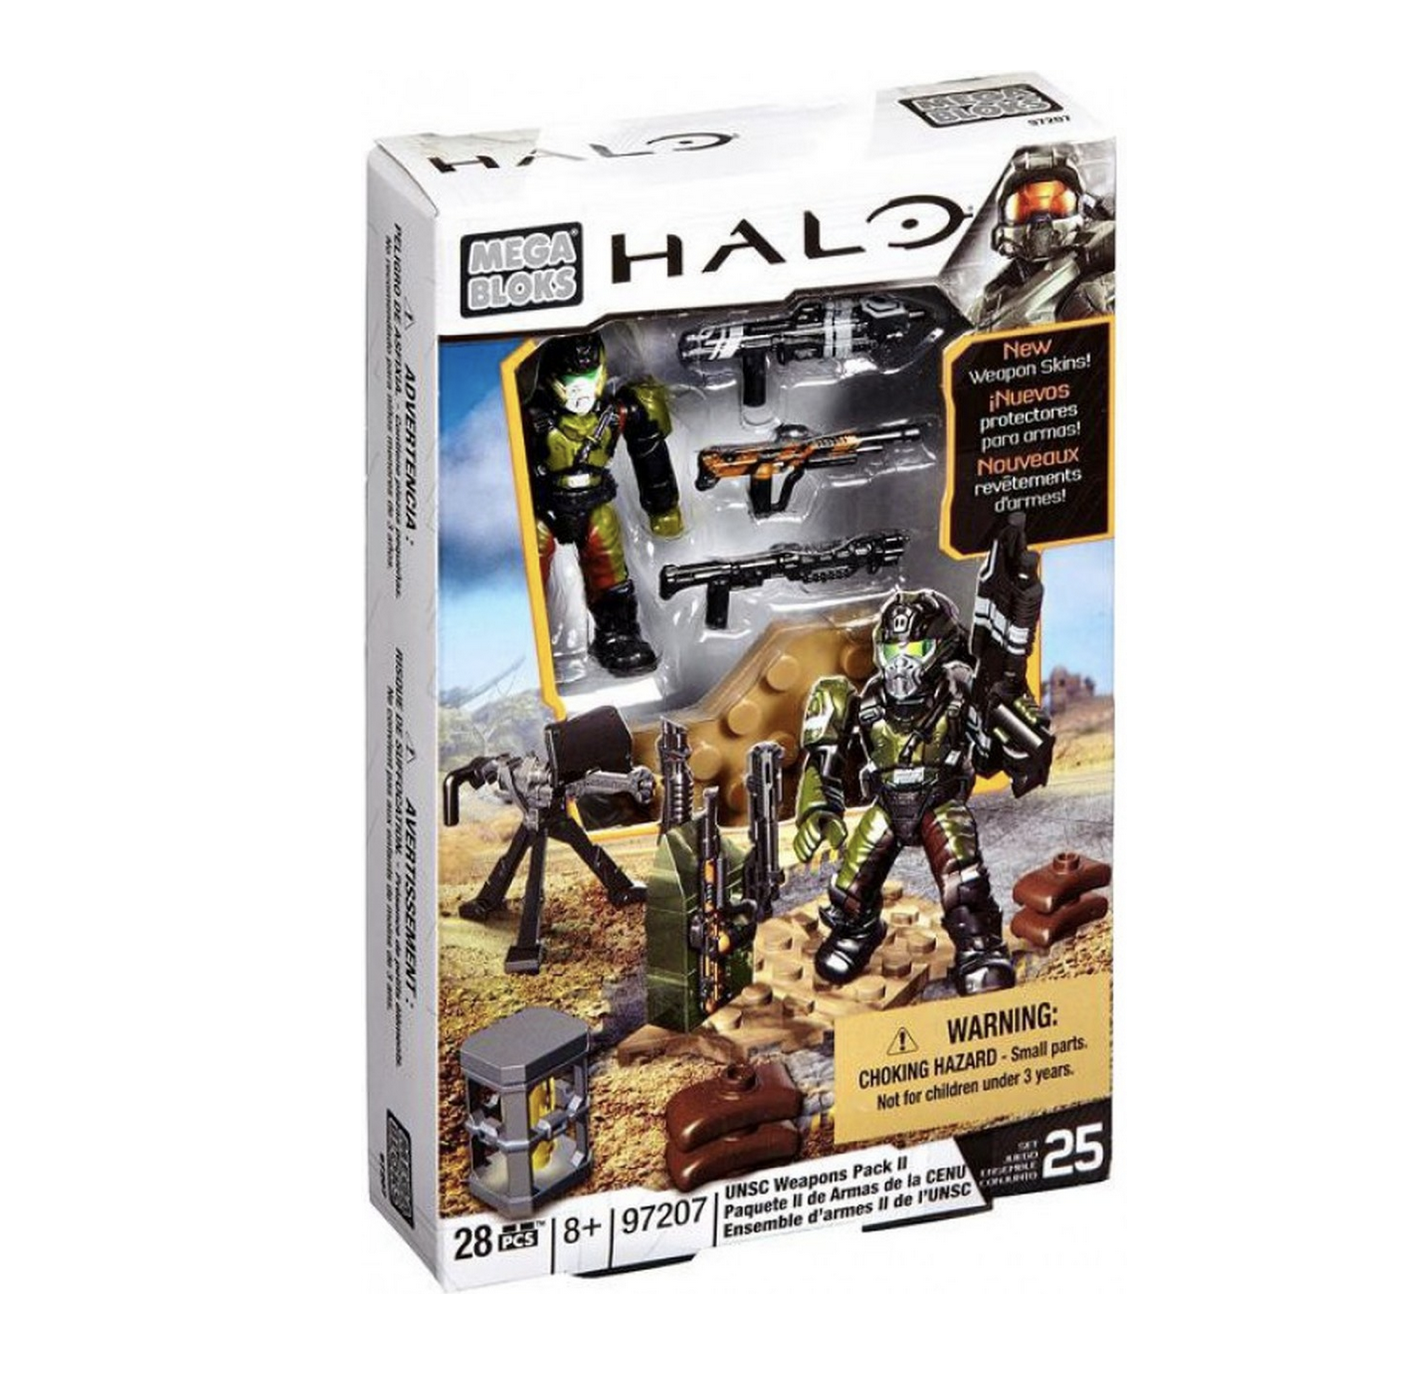 Mega Bloks Halo Forerunner Weapons Pack